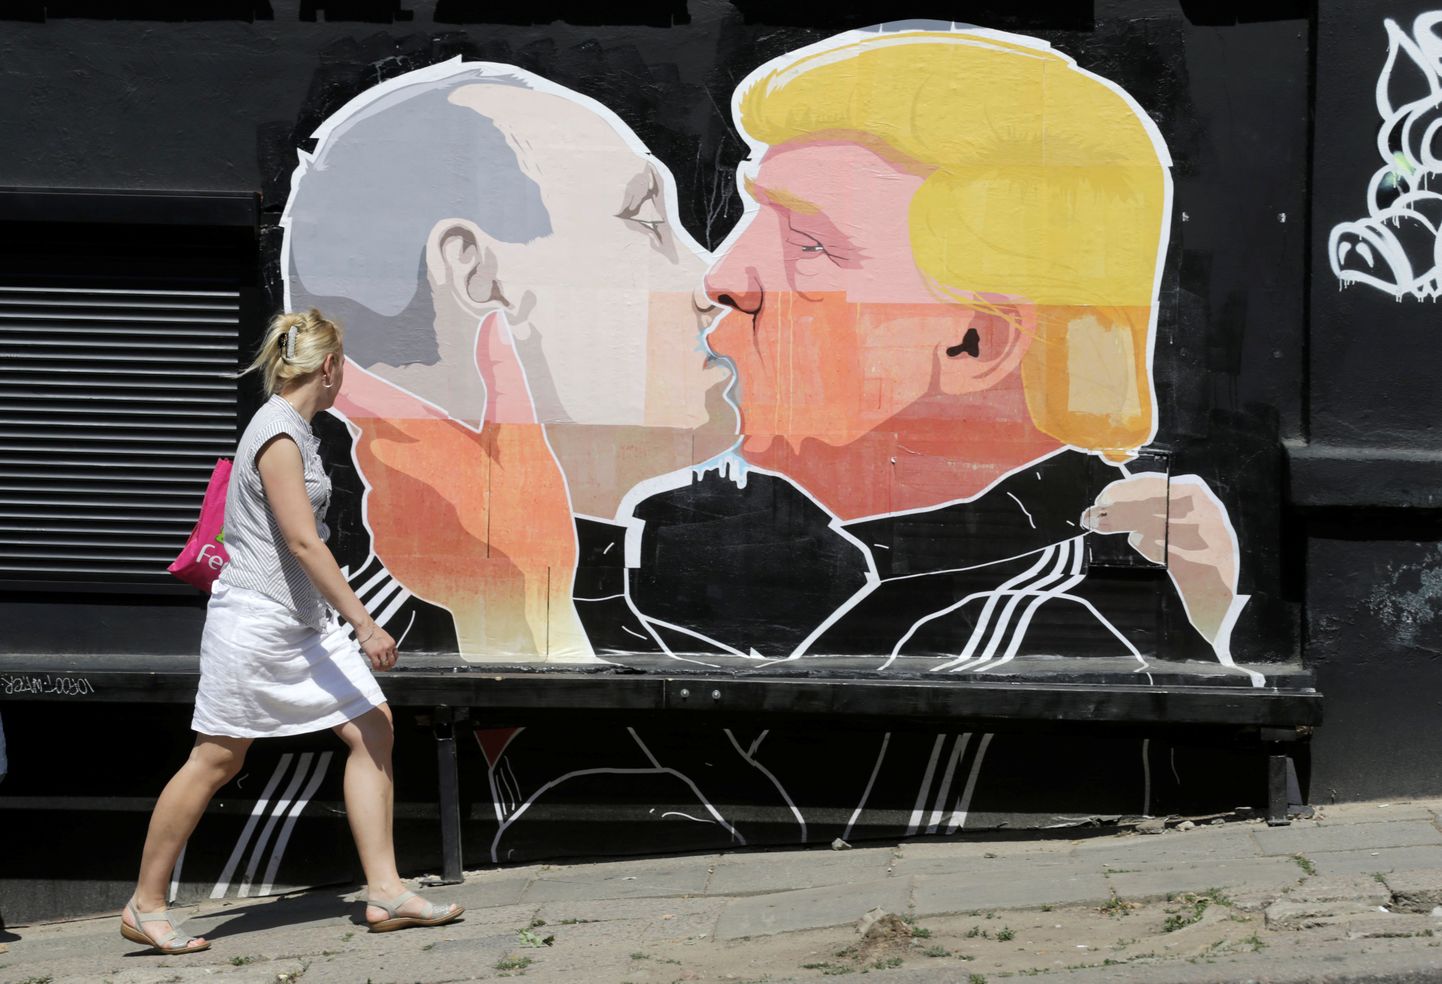 Donald Trumpi (paremal) ja Vladimir Putini suudlust kujutav grafiti Leedu pealinnas Vilniuses.